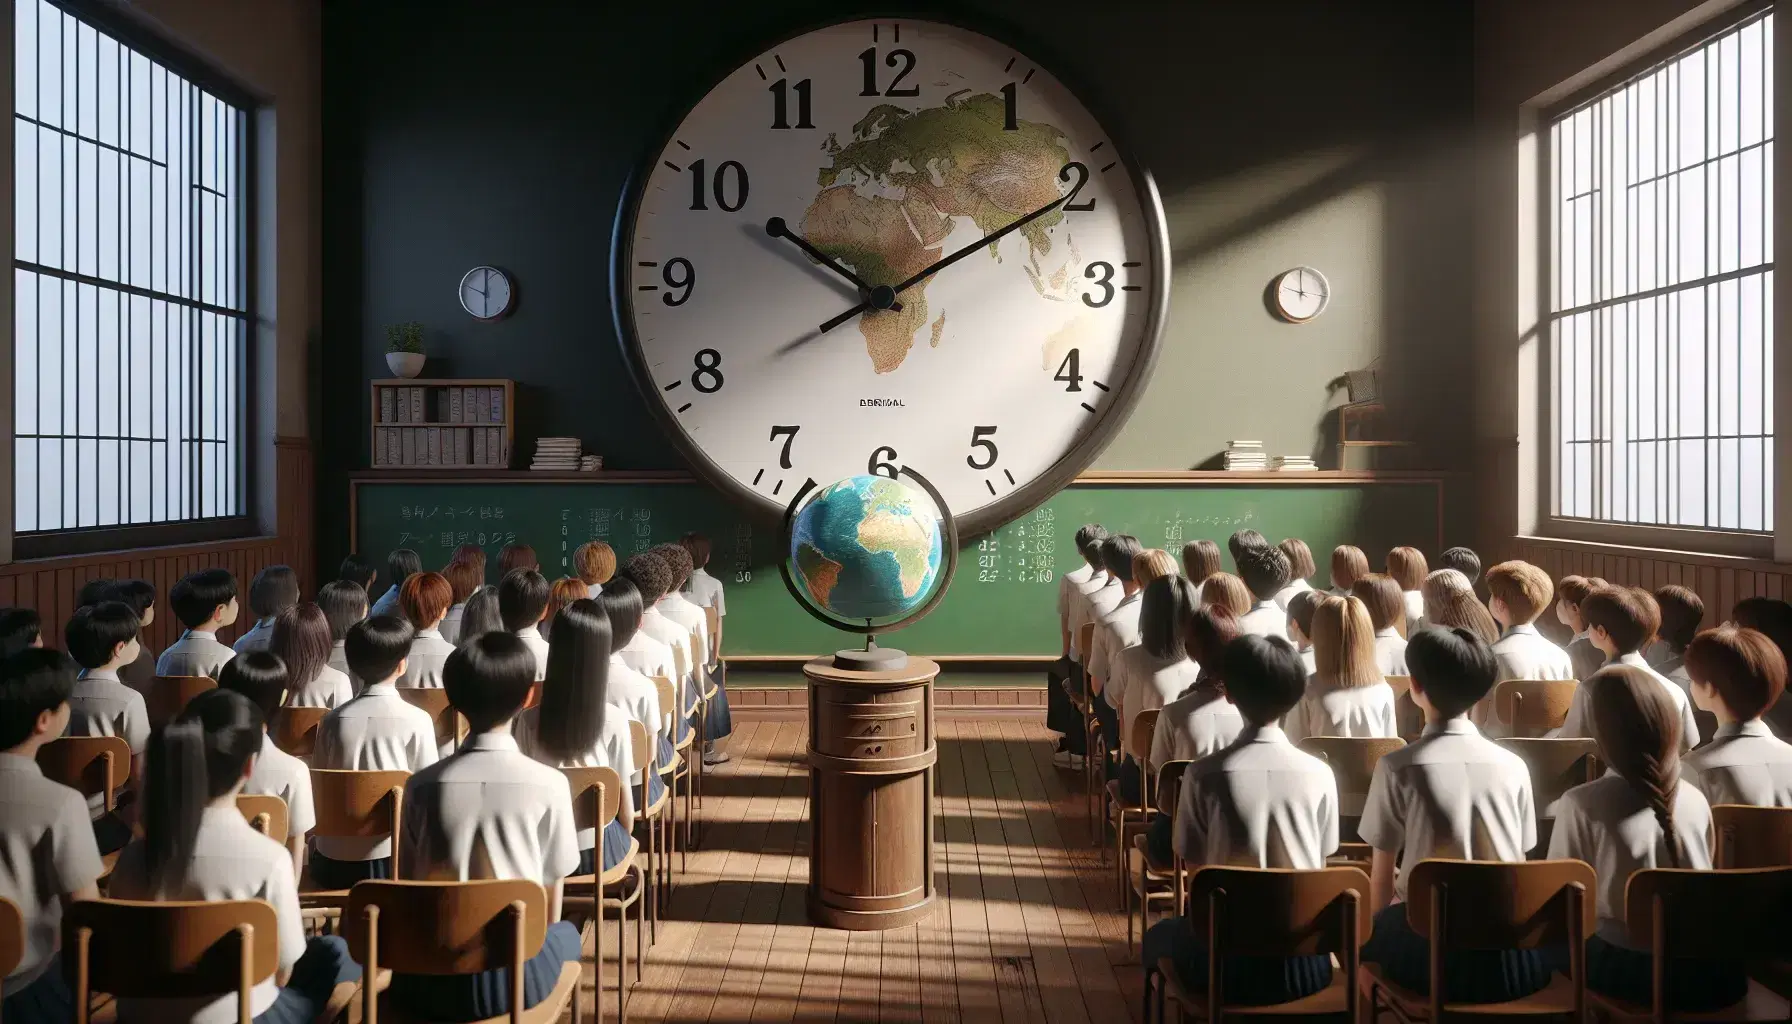 Reloj analógico en pared y estudiantes uniformados enfocados en un globo terráqueo en un aula iluminada naturalmente, sin textos visibles.